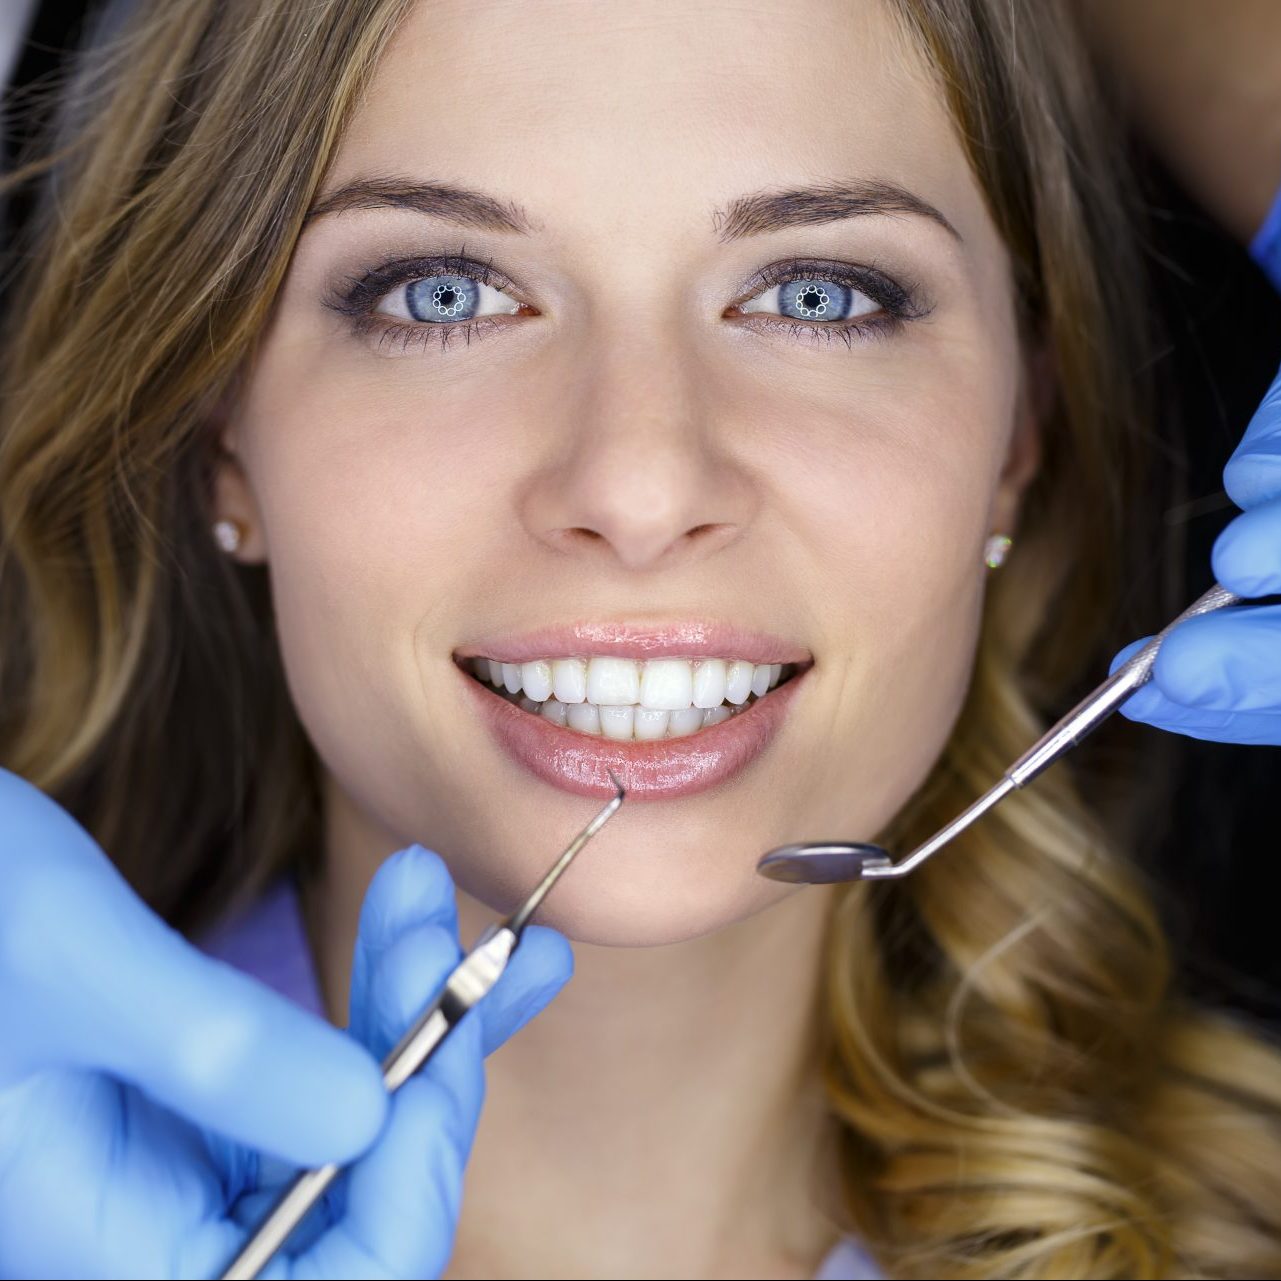 Fogszabályozás szerepe az általános fogorvosi praxisban